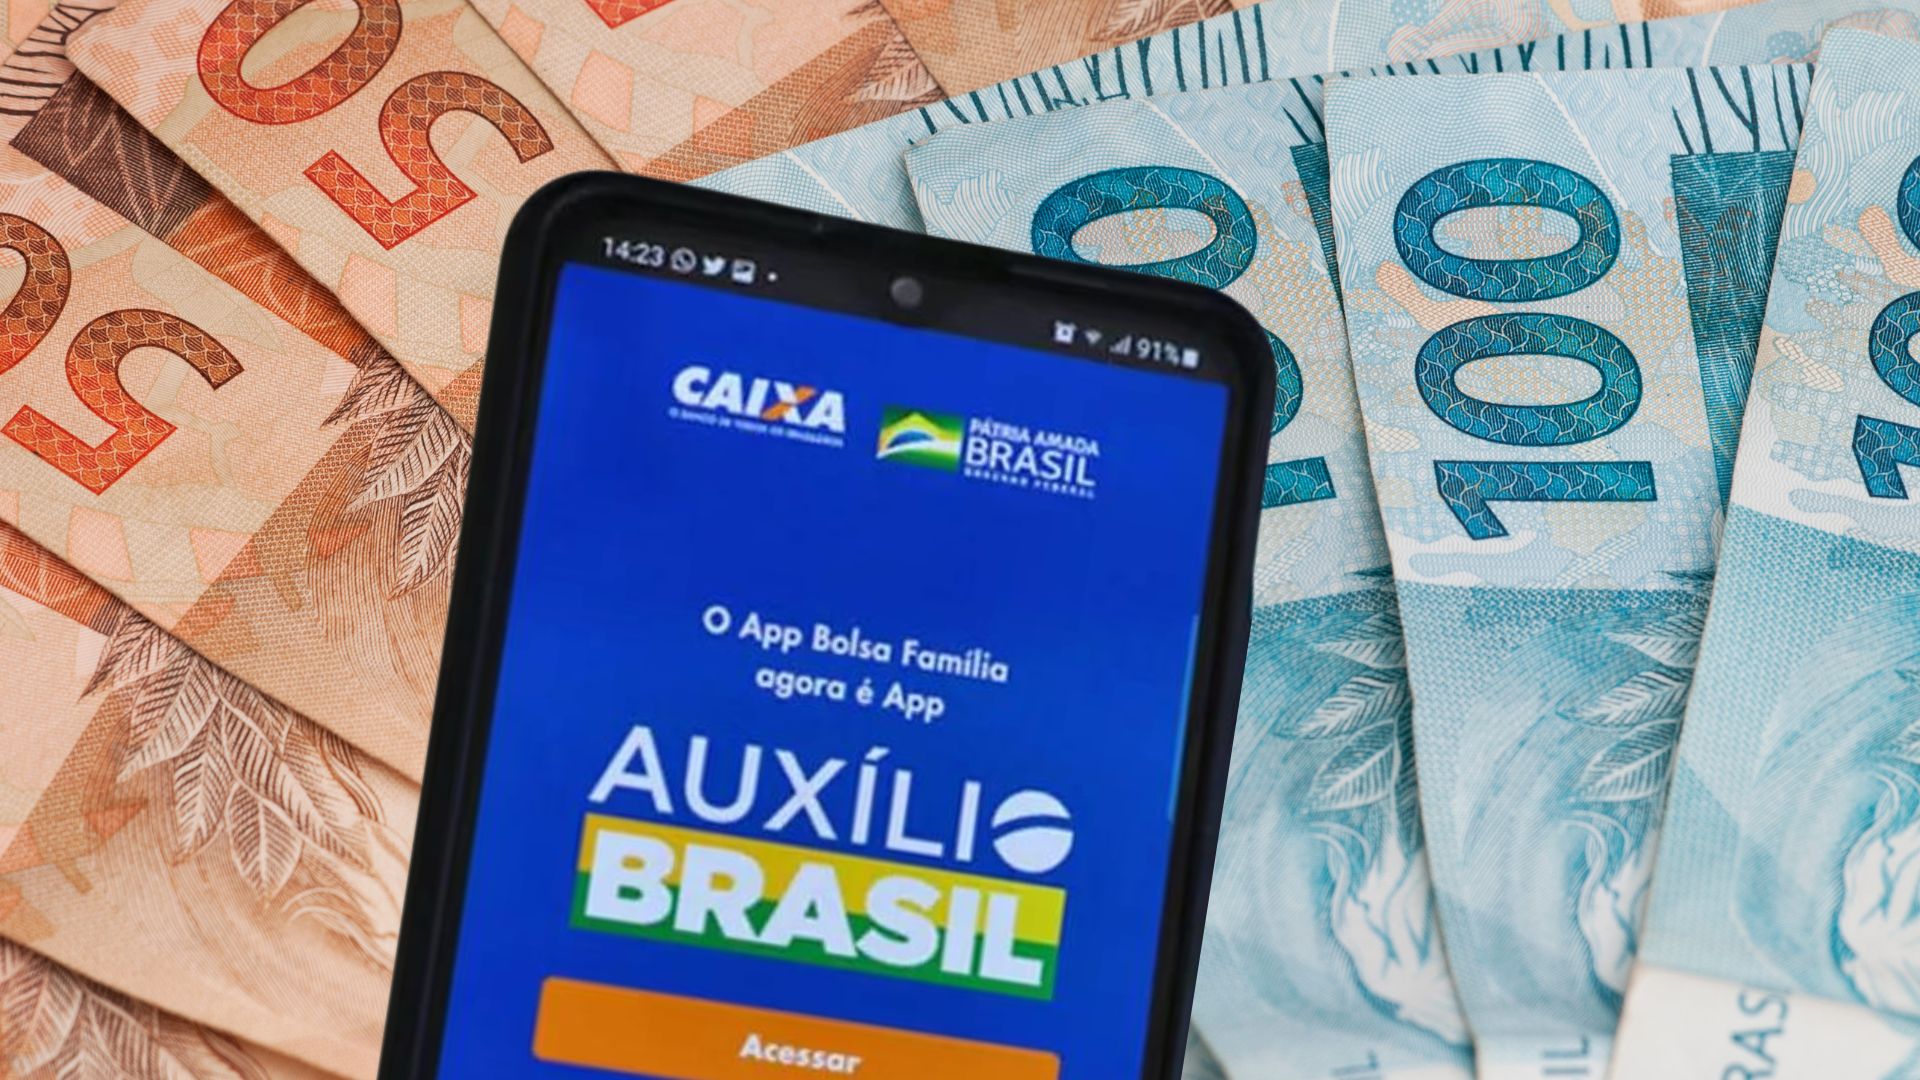 Recebeu o novo cartão do Auxílio Brasil com função débito? Saiba como  cadastrar a senha